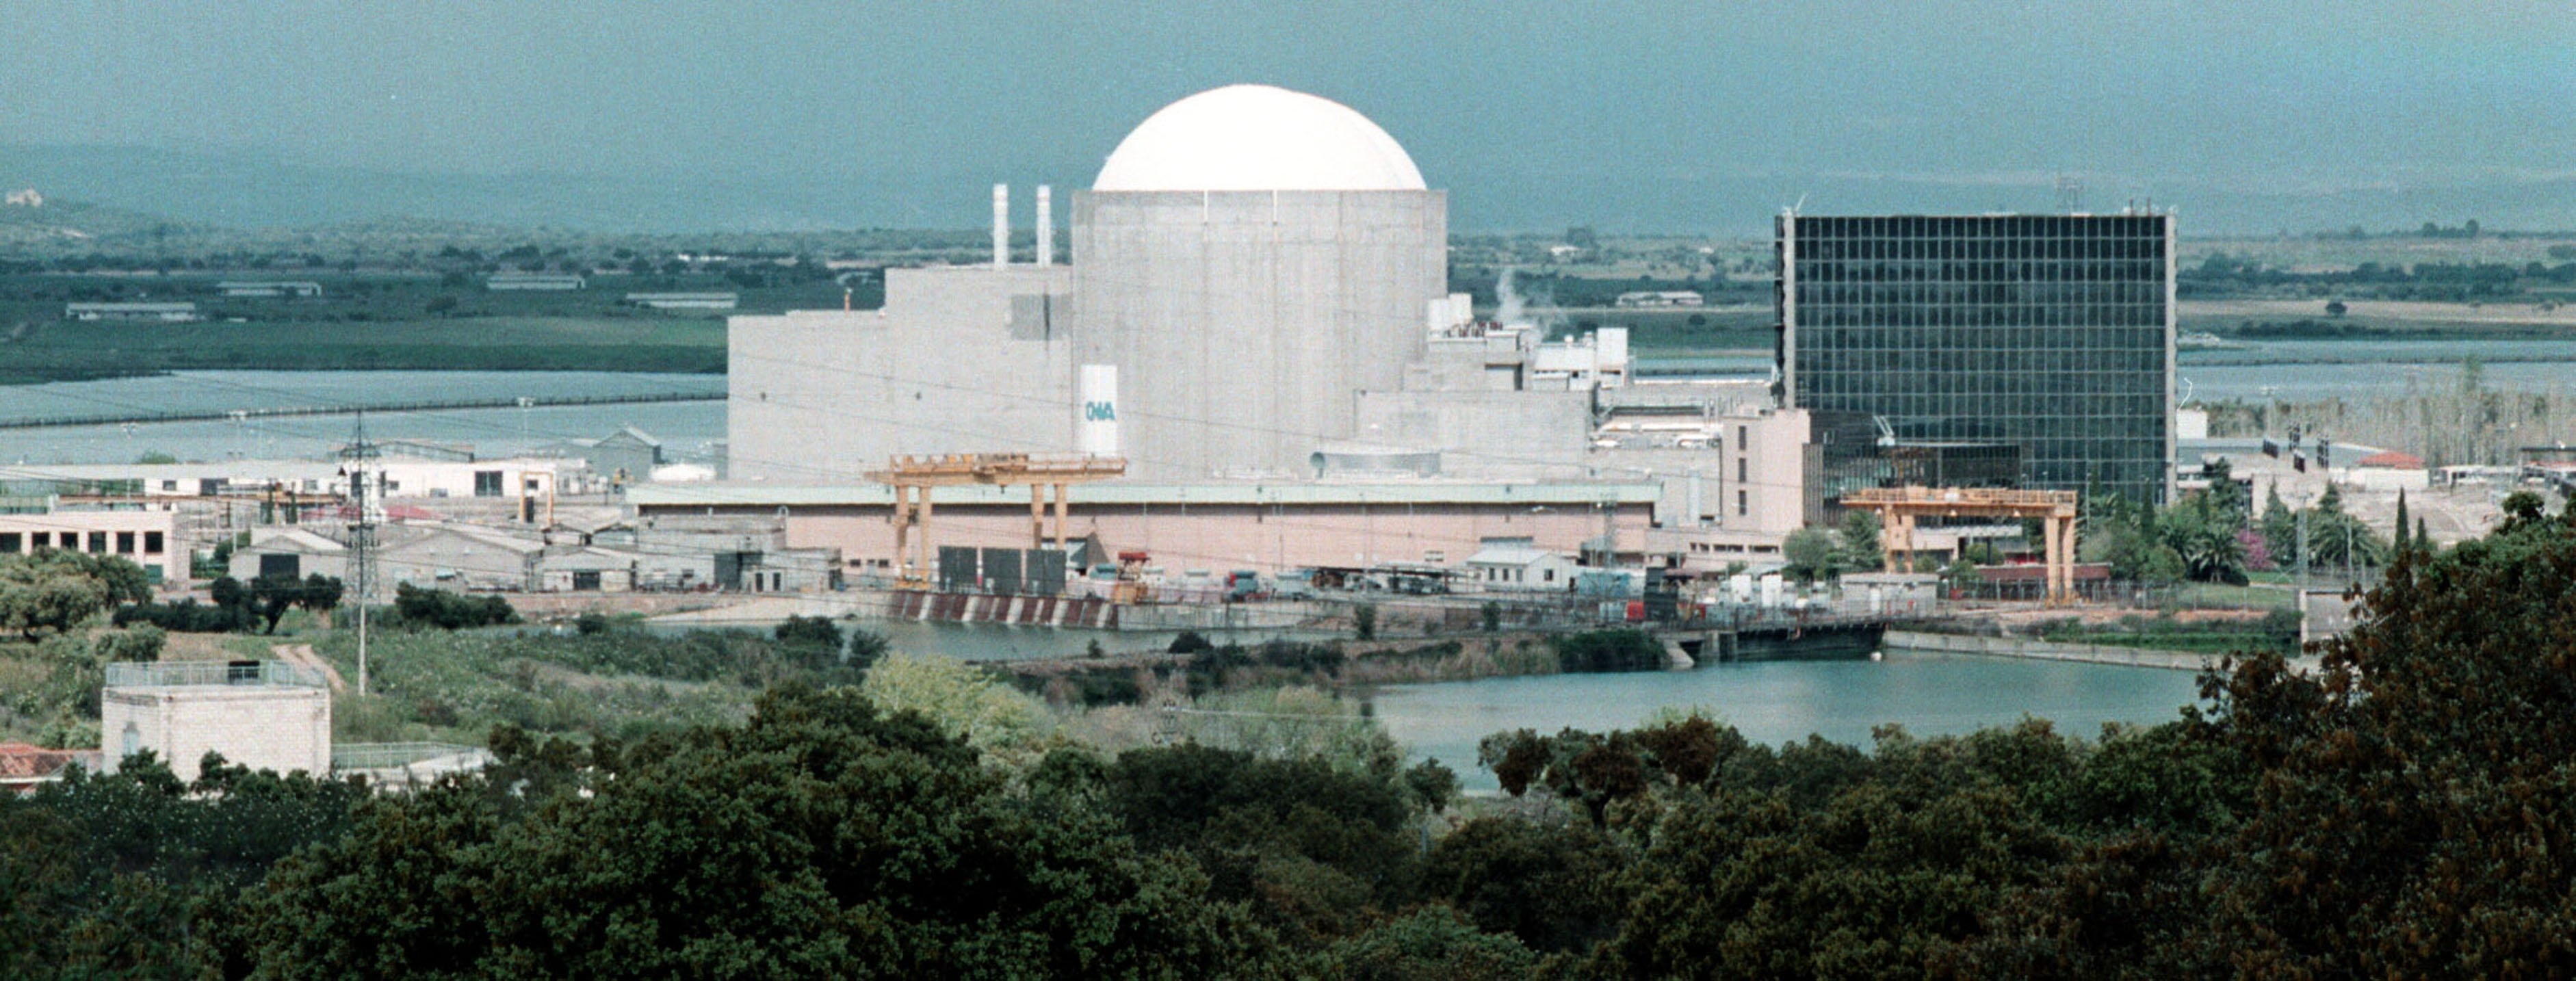 El Central Nuclear de Almaraz acopla la unidad II a la red eléctrica tras sustituir la excitatriz del alternador